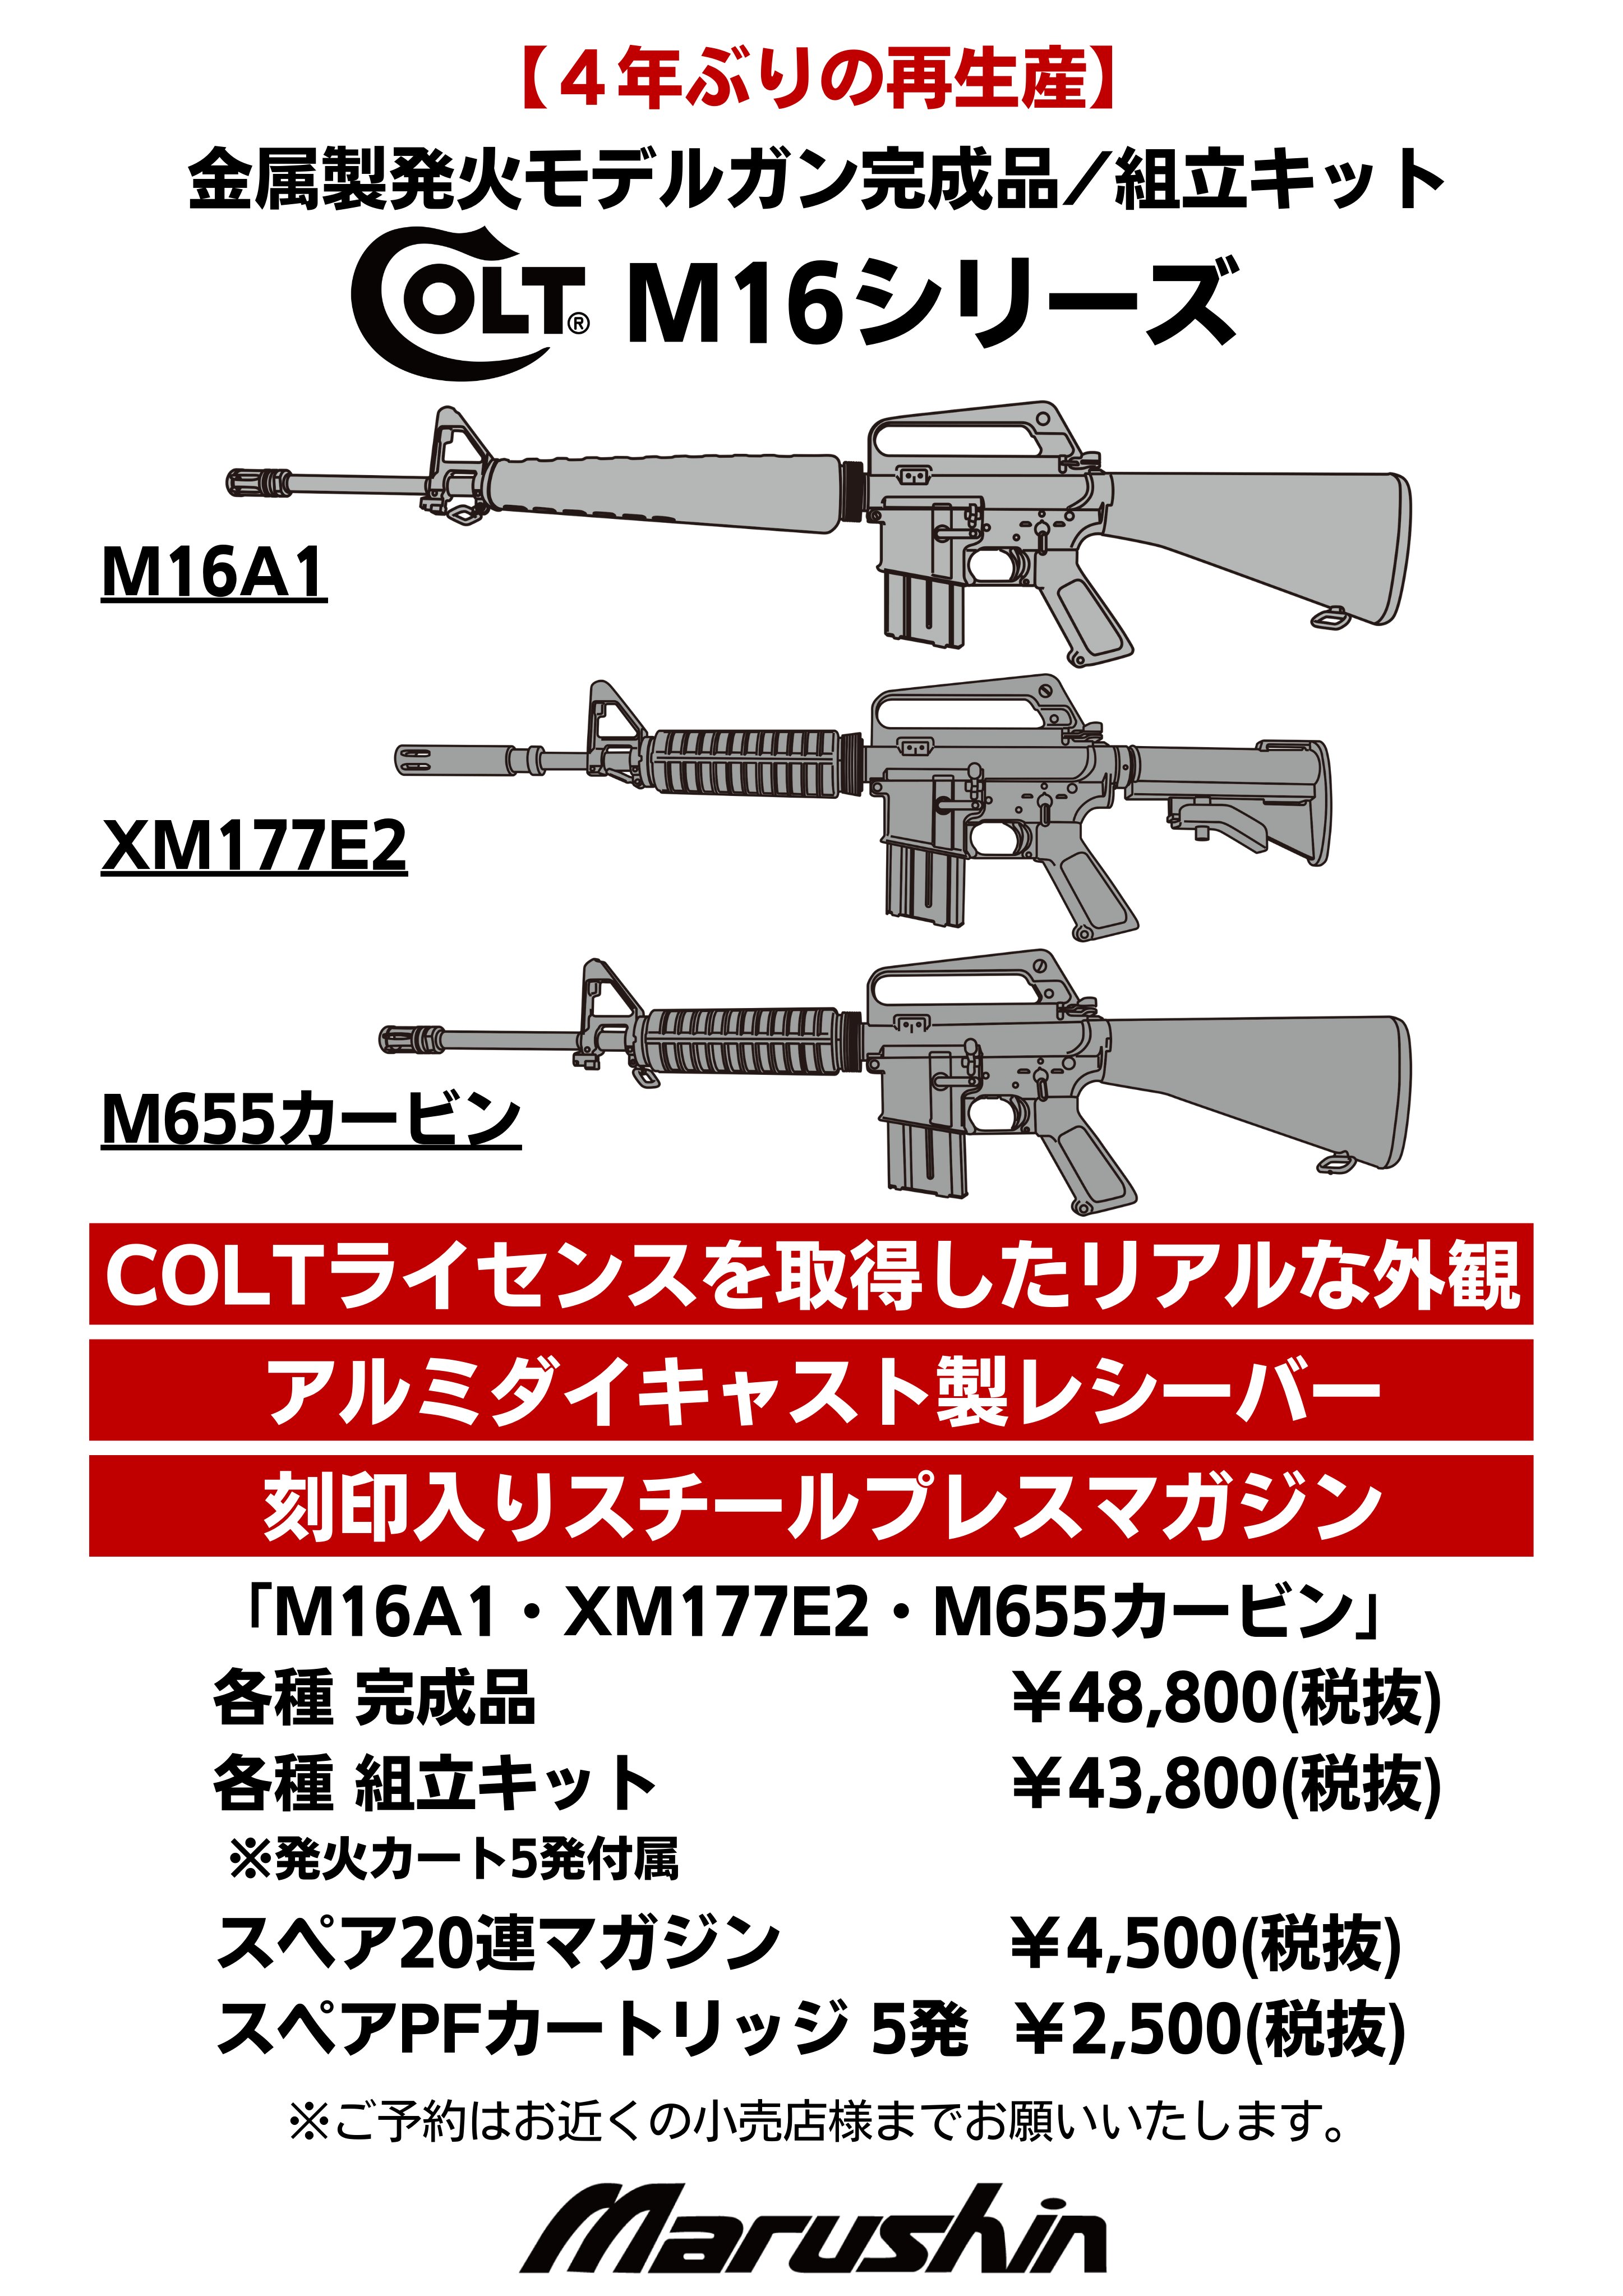 マルシン 発火式金属製モデルガン COLT M16A1 組立キット ホビー